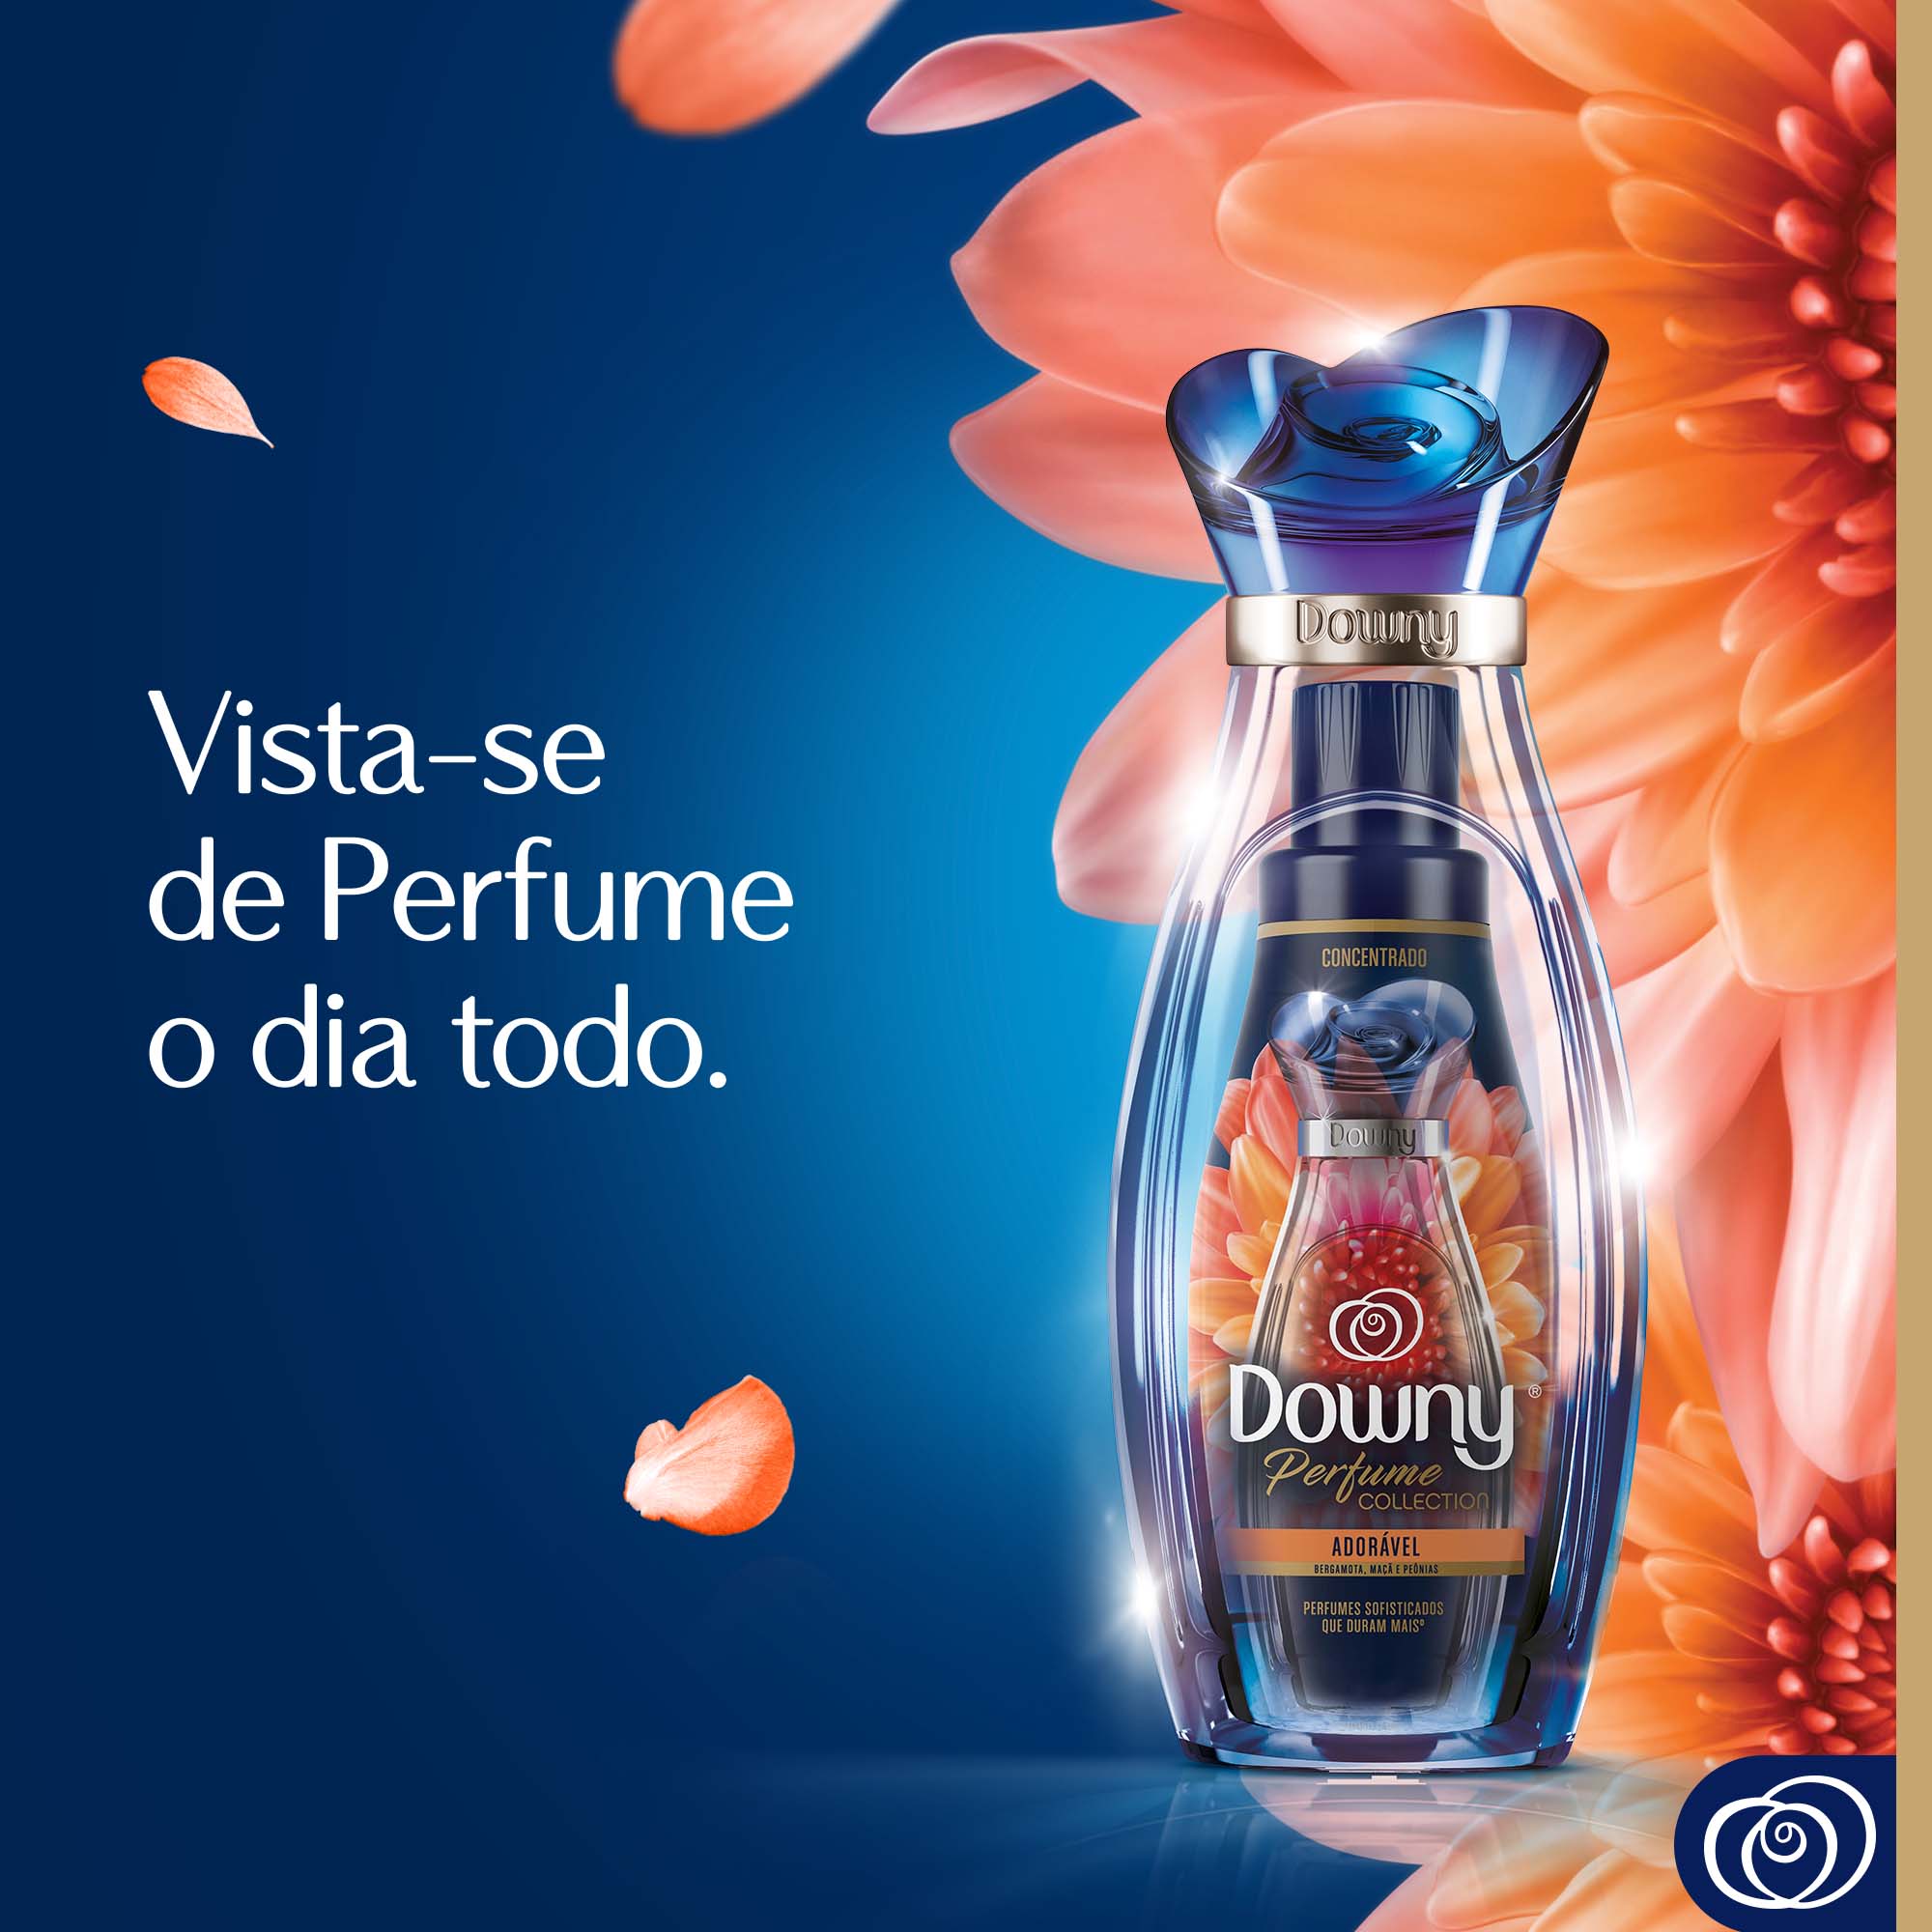 Downy Perfume Collection Místico - Amaciante Concentrado, 3L